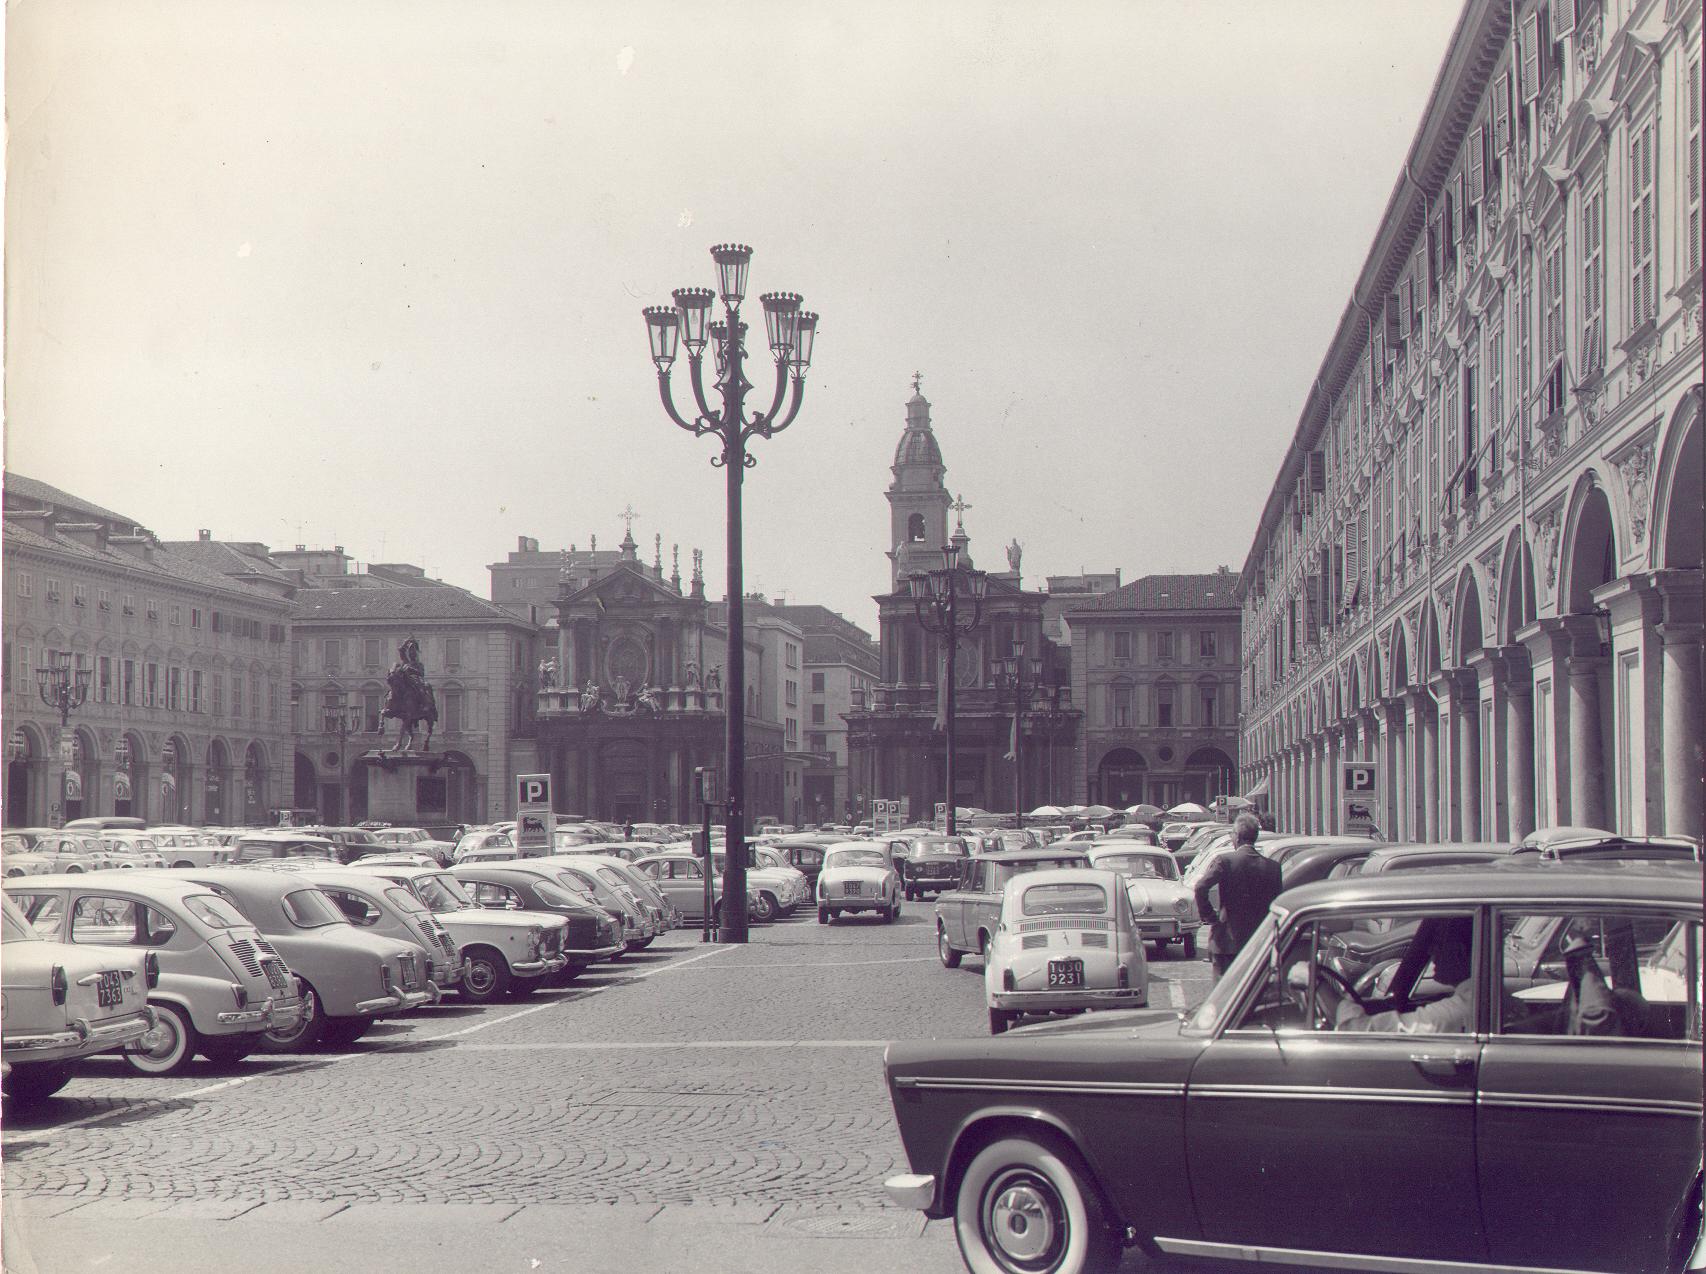 Nuova illuminazione, anni '60 @ Piazza San Carlo